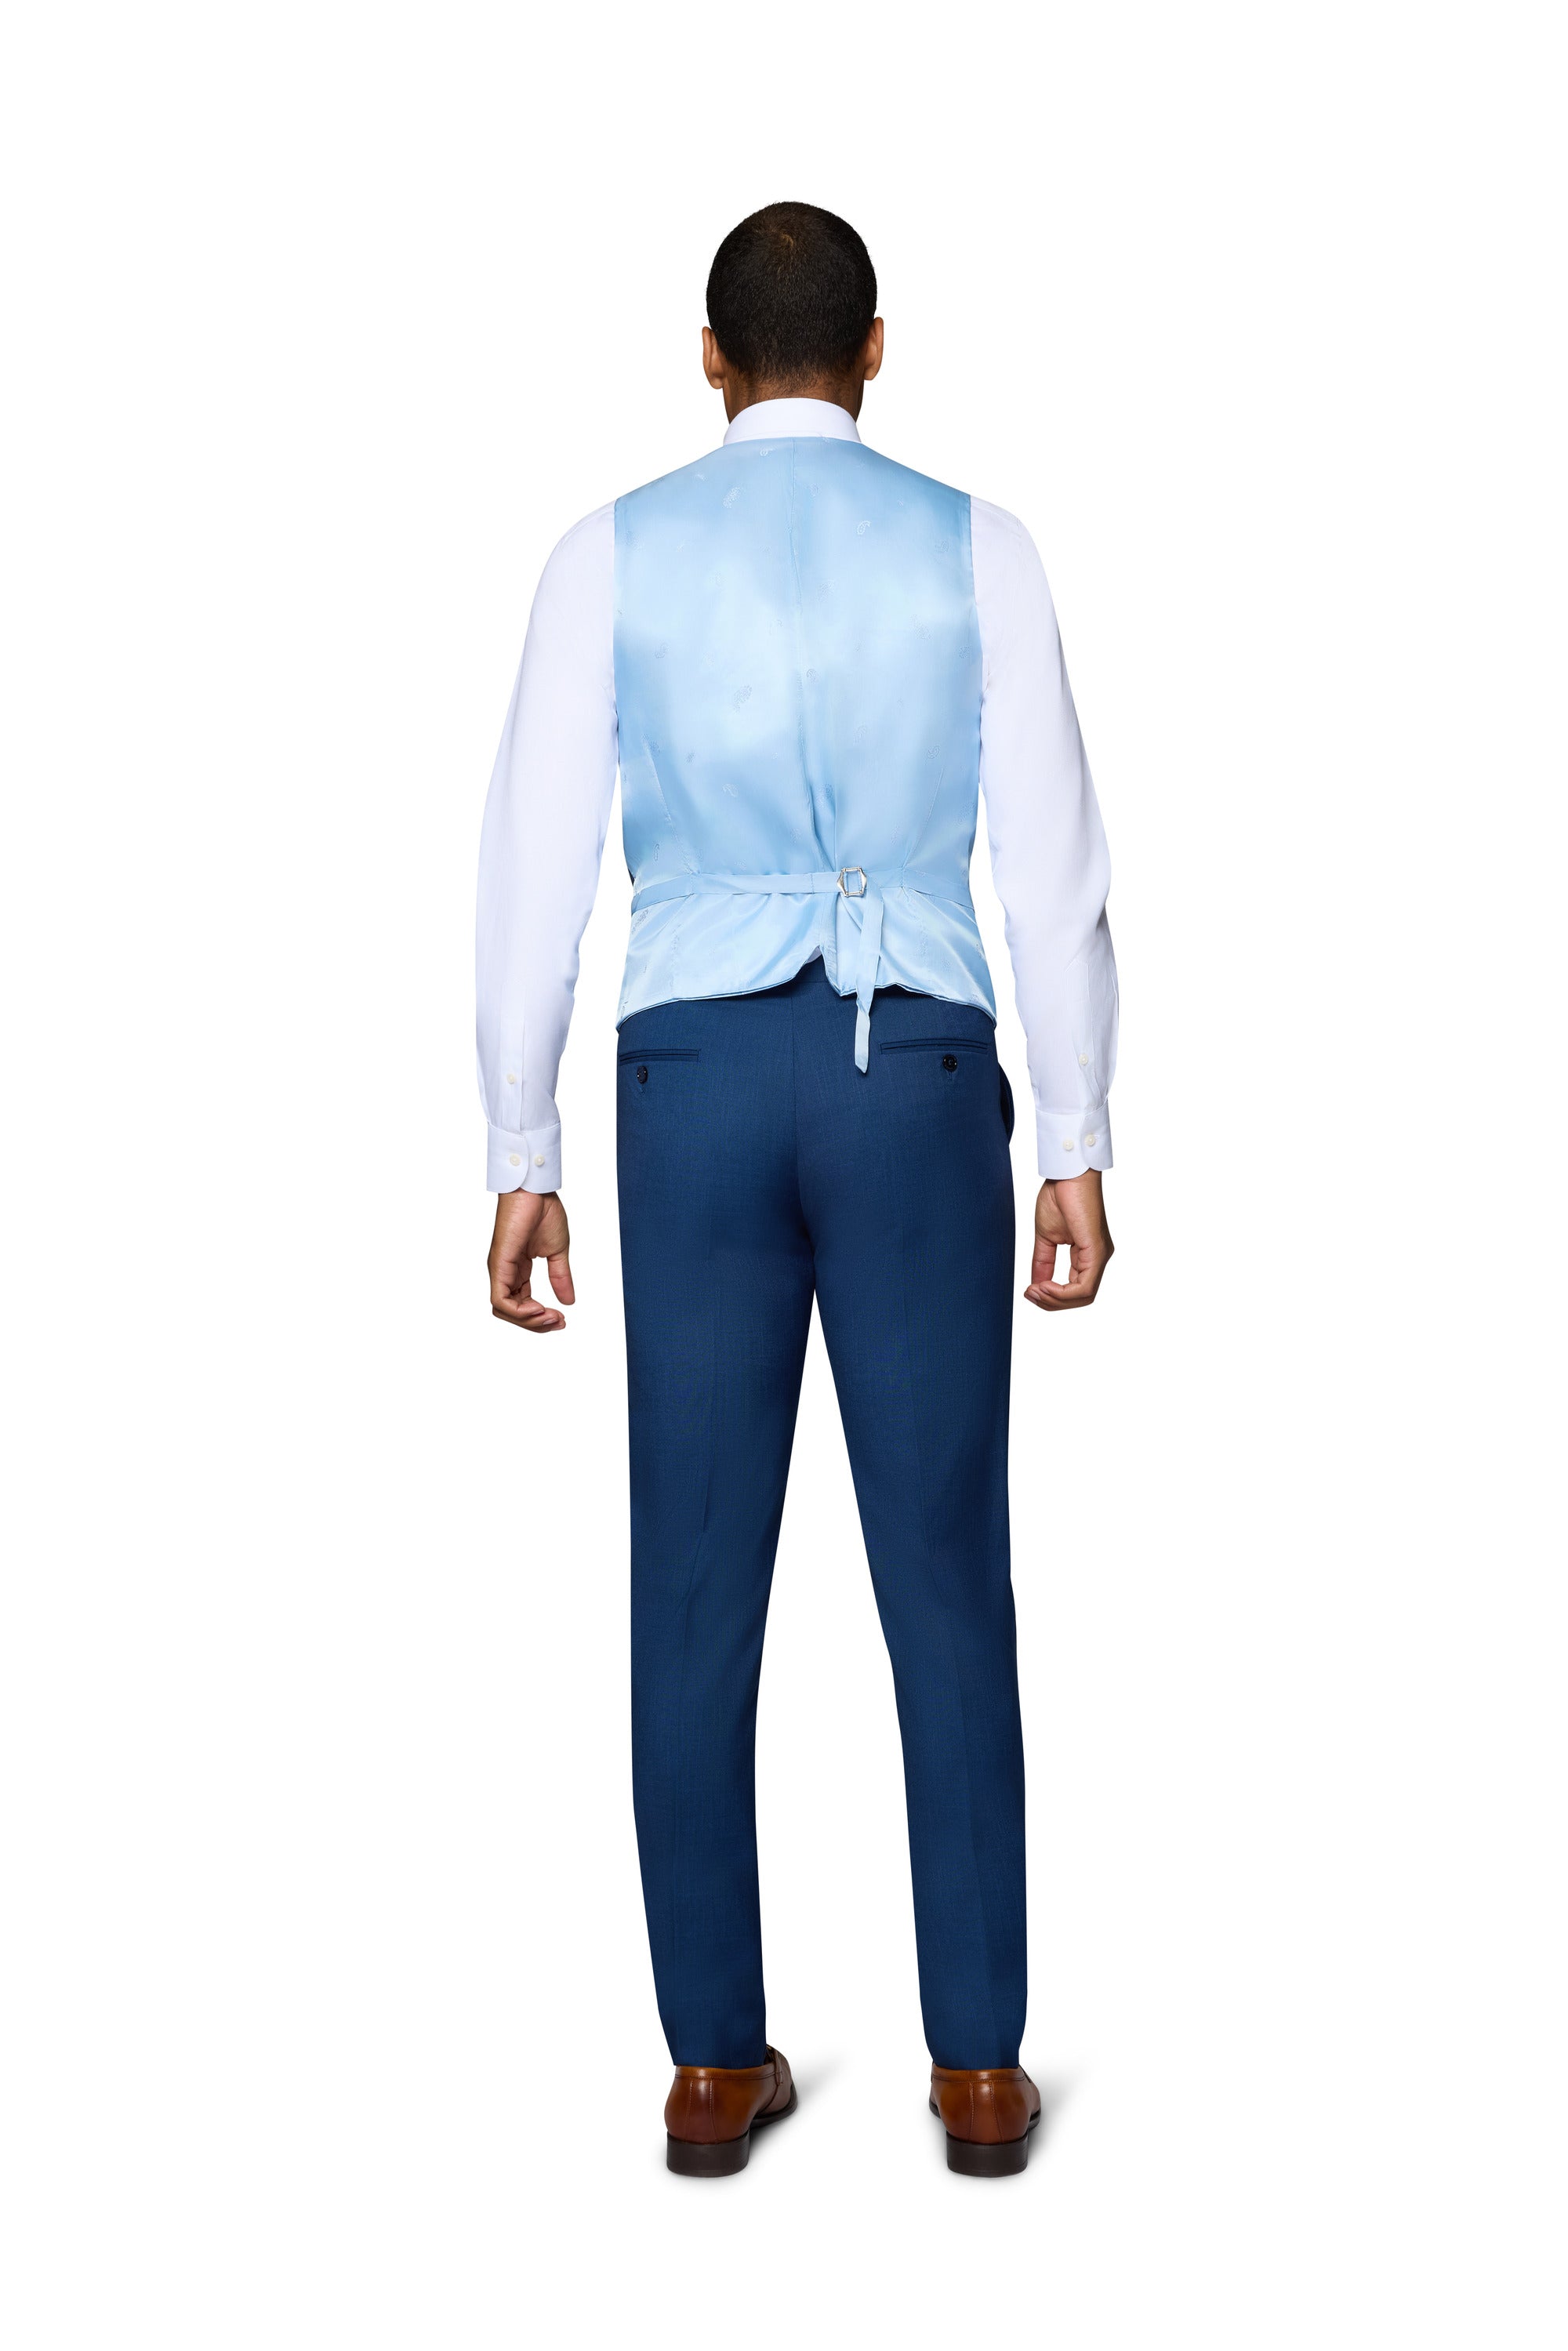 Berragamo Sharkskin Vested Slim Fit New Blue Suit